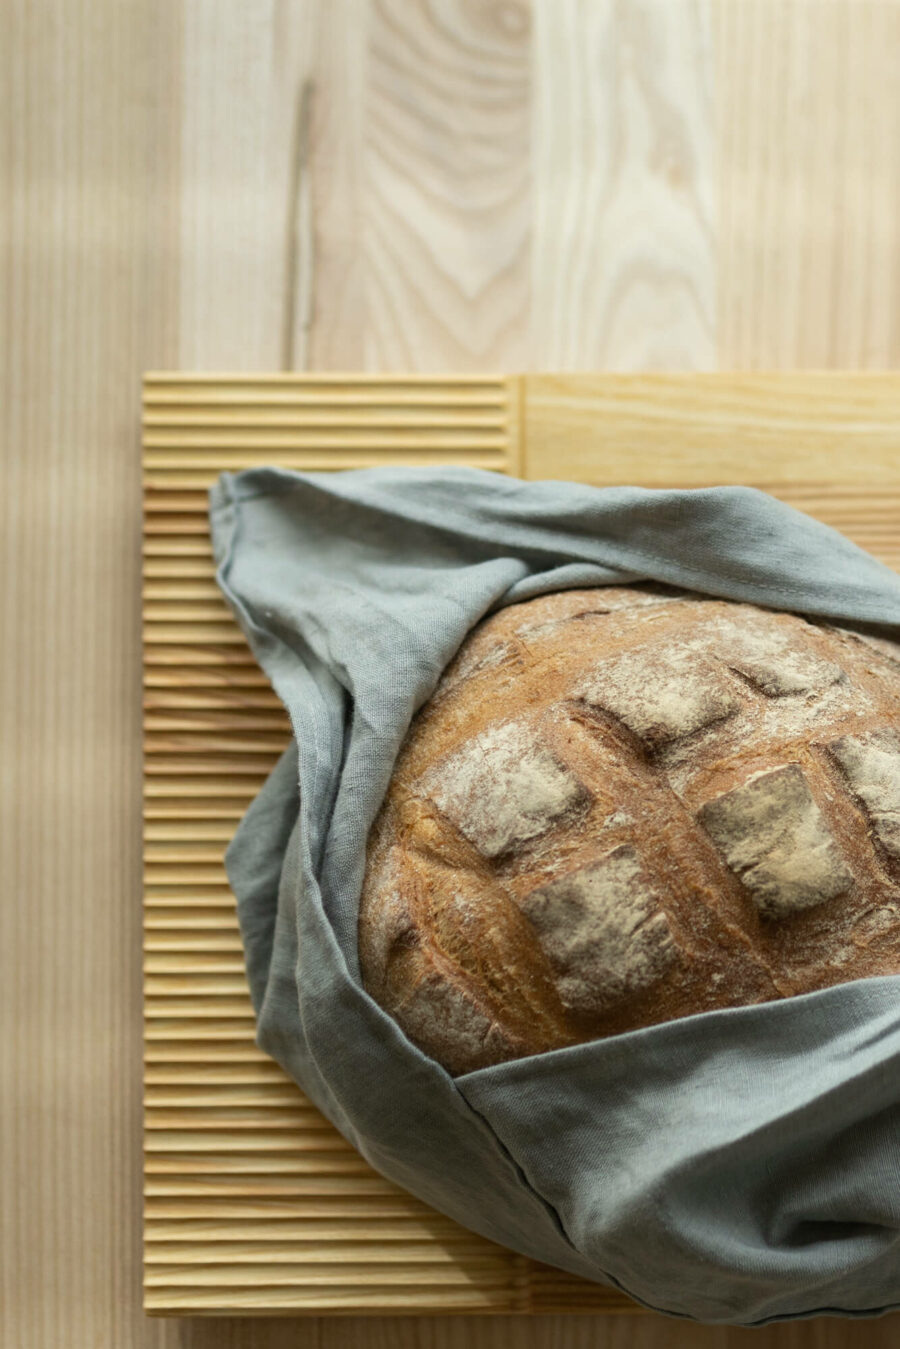 Na desce do krojenia i serwowania Fields leży okrągły chleb owinięty lnianym workiem.